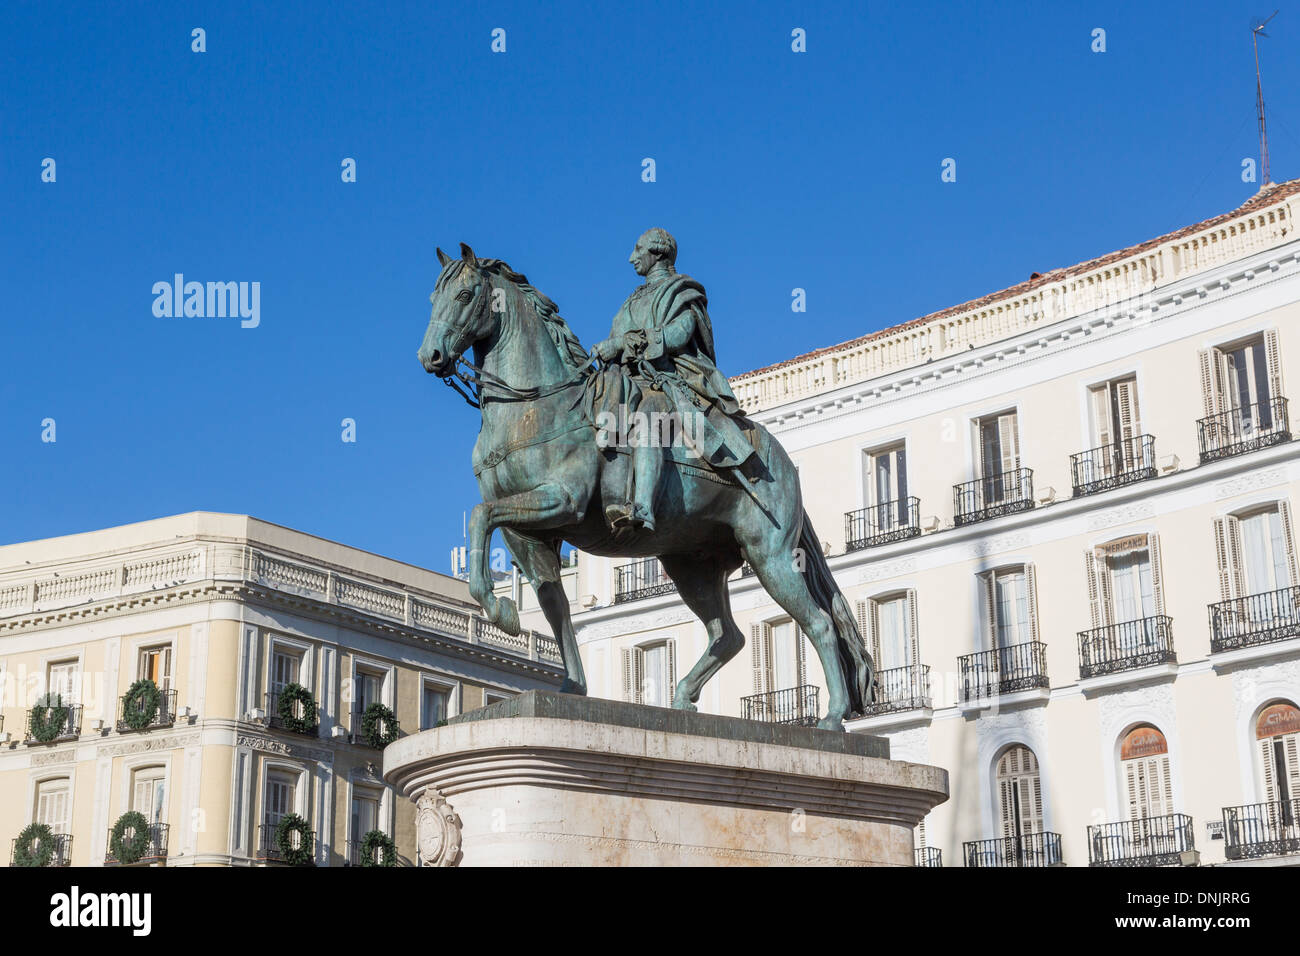 Blick auf die berühmte Statue von König Karl III. von Spanien montiert auf dem Pferderücken an der Plaza Mayor, Madrid, die Hauptstadt Spaniens, ein Sehenswürdigkeiten Attraktion Stockfoto